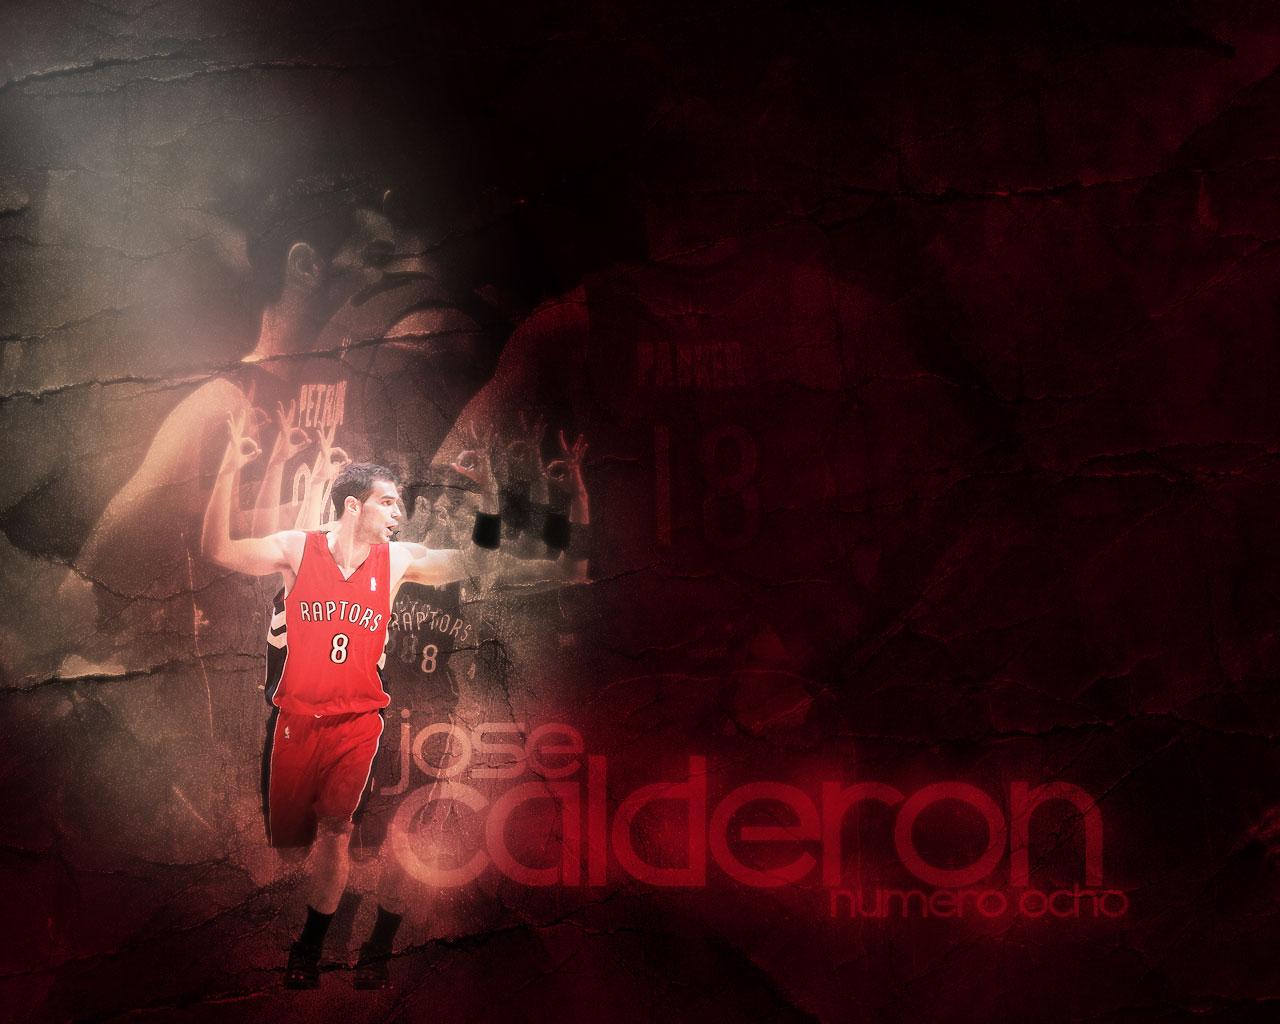 Jose Calderon Raptors Wallpaper. Basketball Wallpaper at